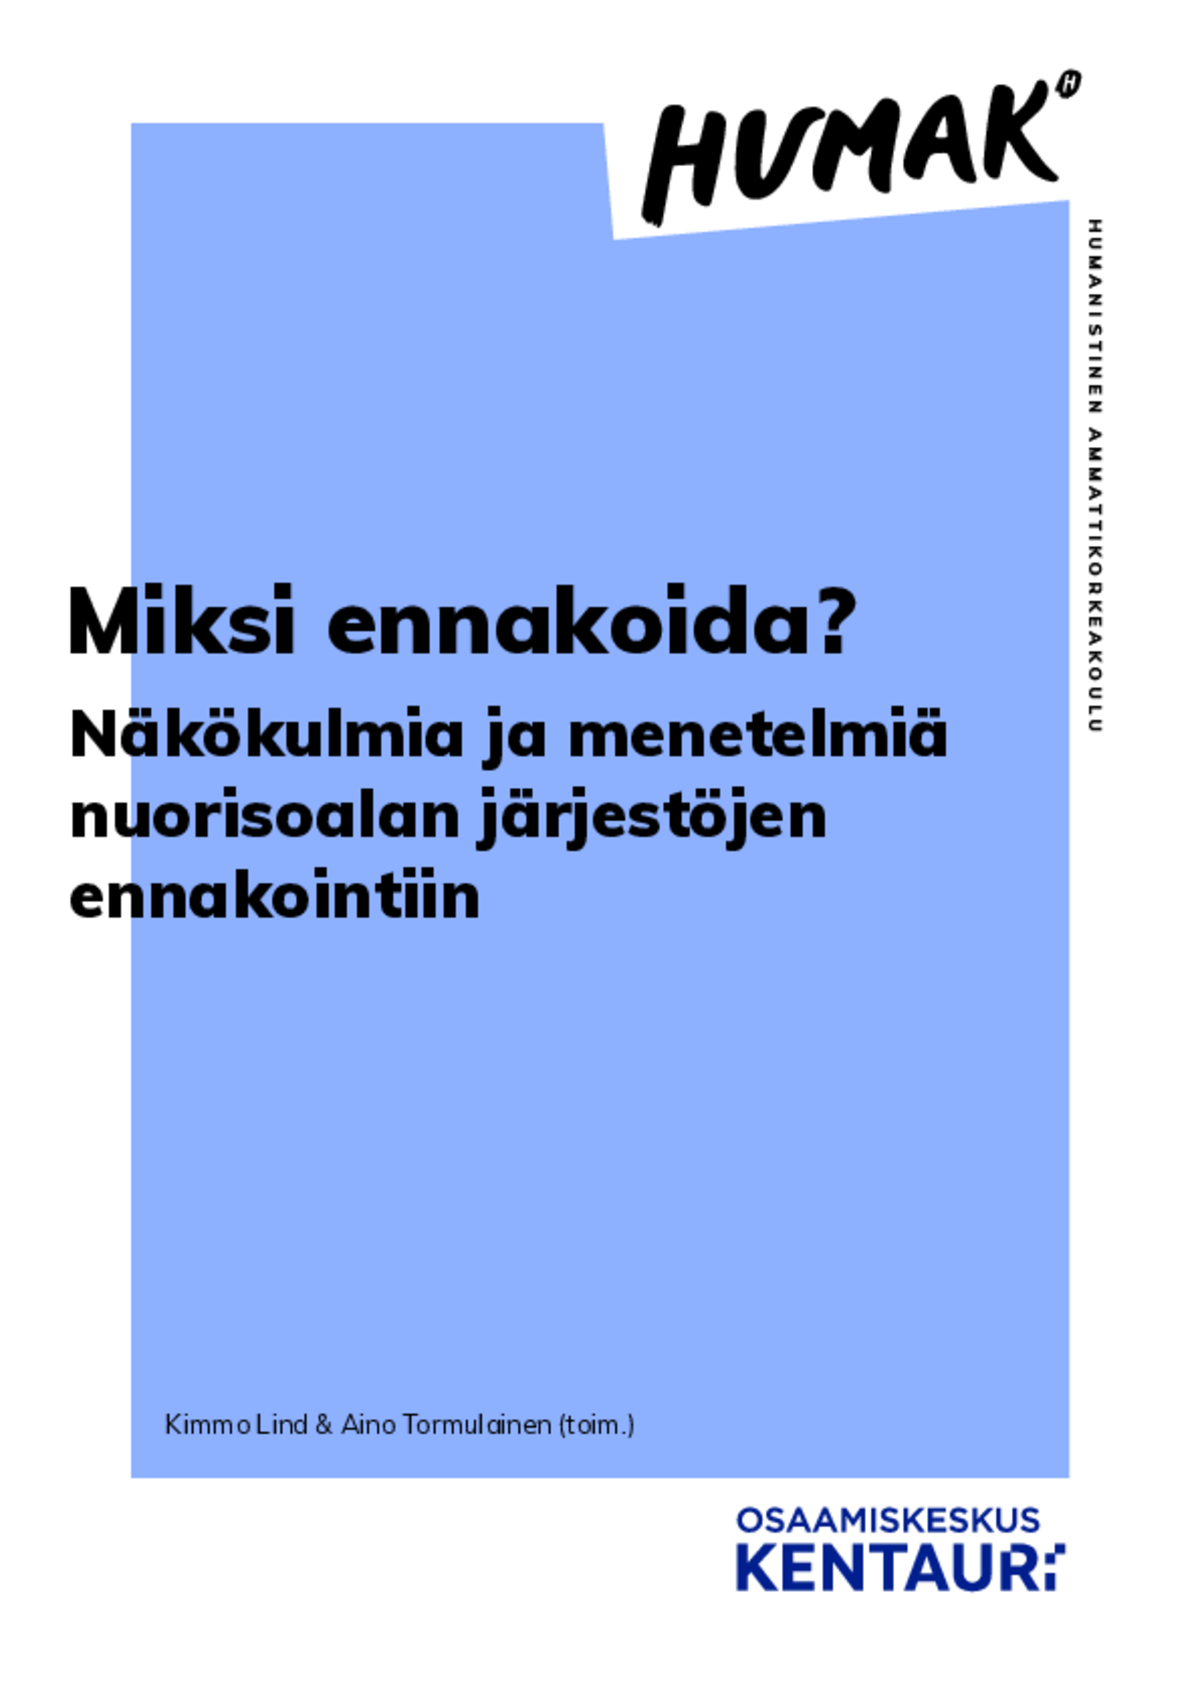 Kimmo Lind & Aino Tormulainen (toim.) Miksi ennakoida? Näkökulmia ja menetelmiä nuorisoalan järjestöjen ennakointiin -käsikirja